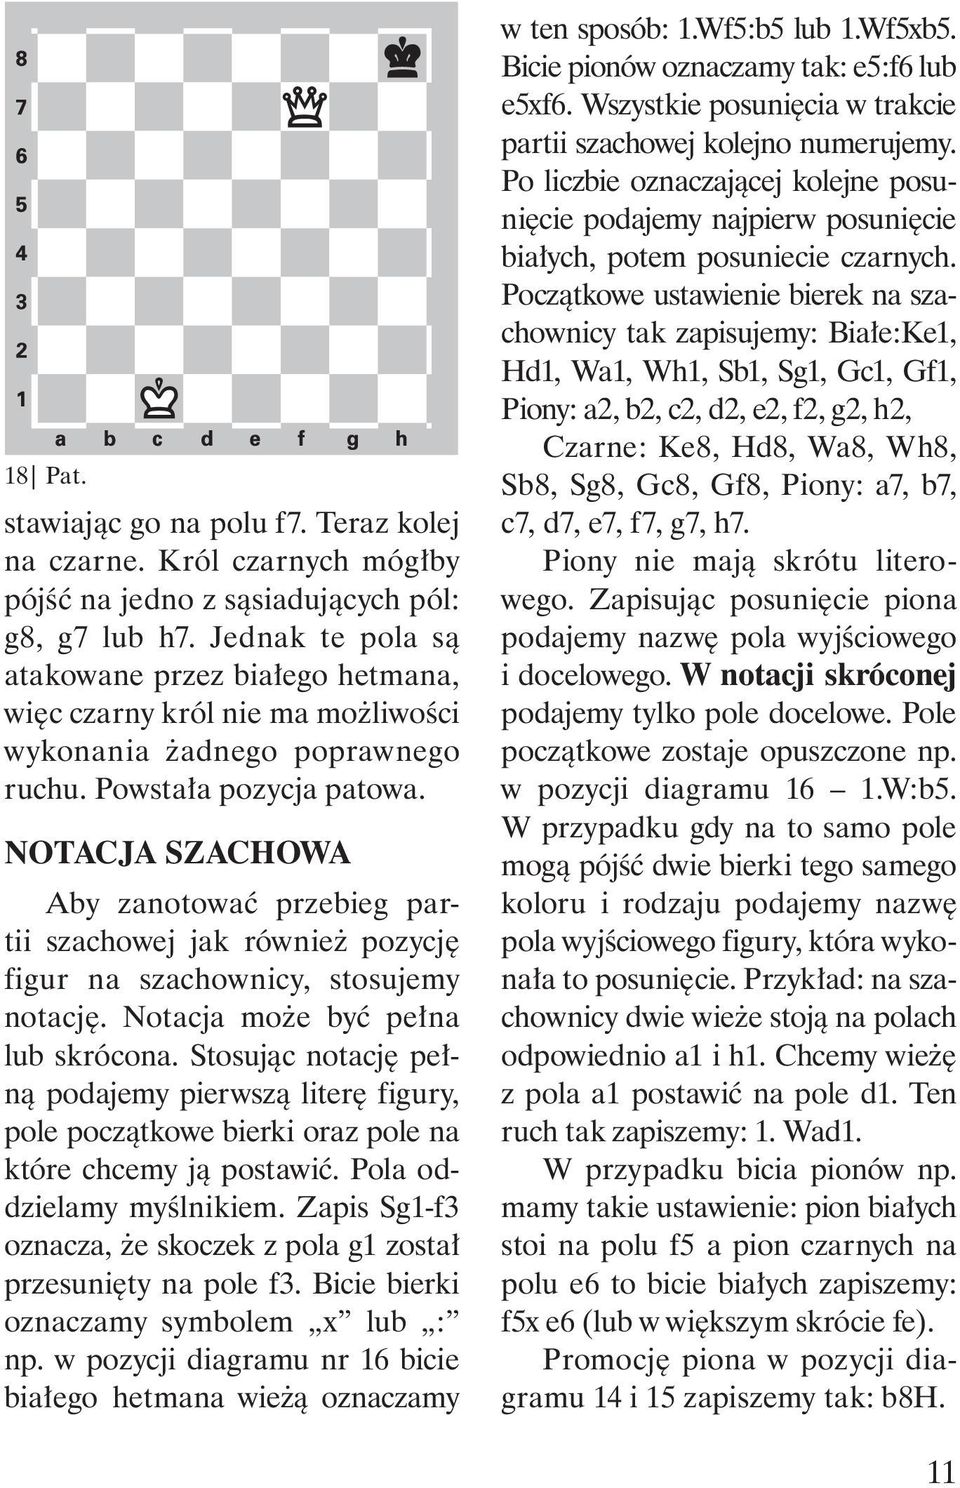 NOTACJA SZACHOWA Aby zanotować przebieg partii szachowej jak również pozycję figur na szachownicy, stosujemy notację. Notacja może być pełna lub skrócona.